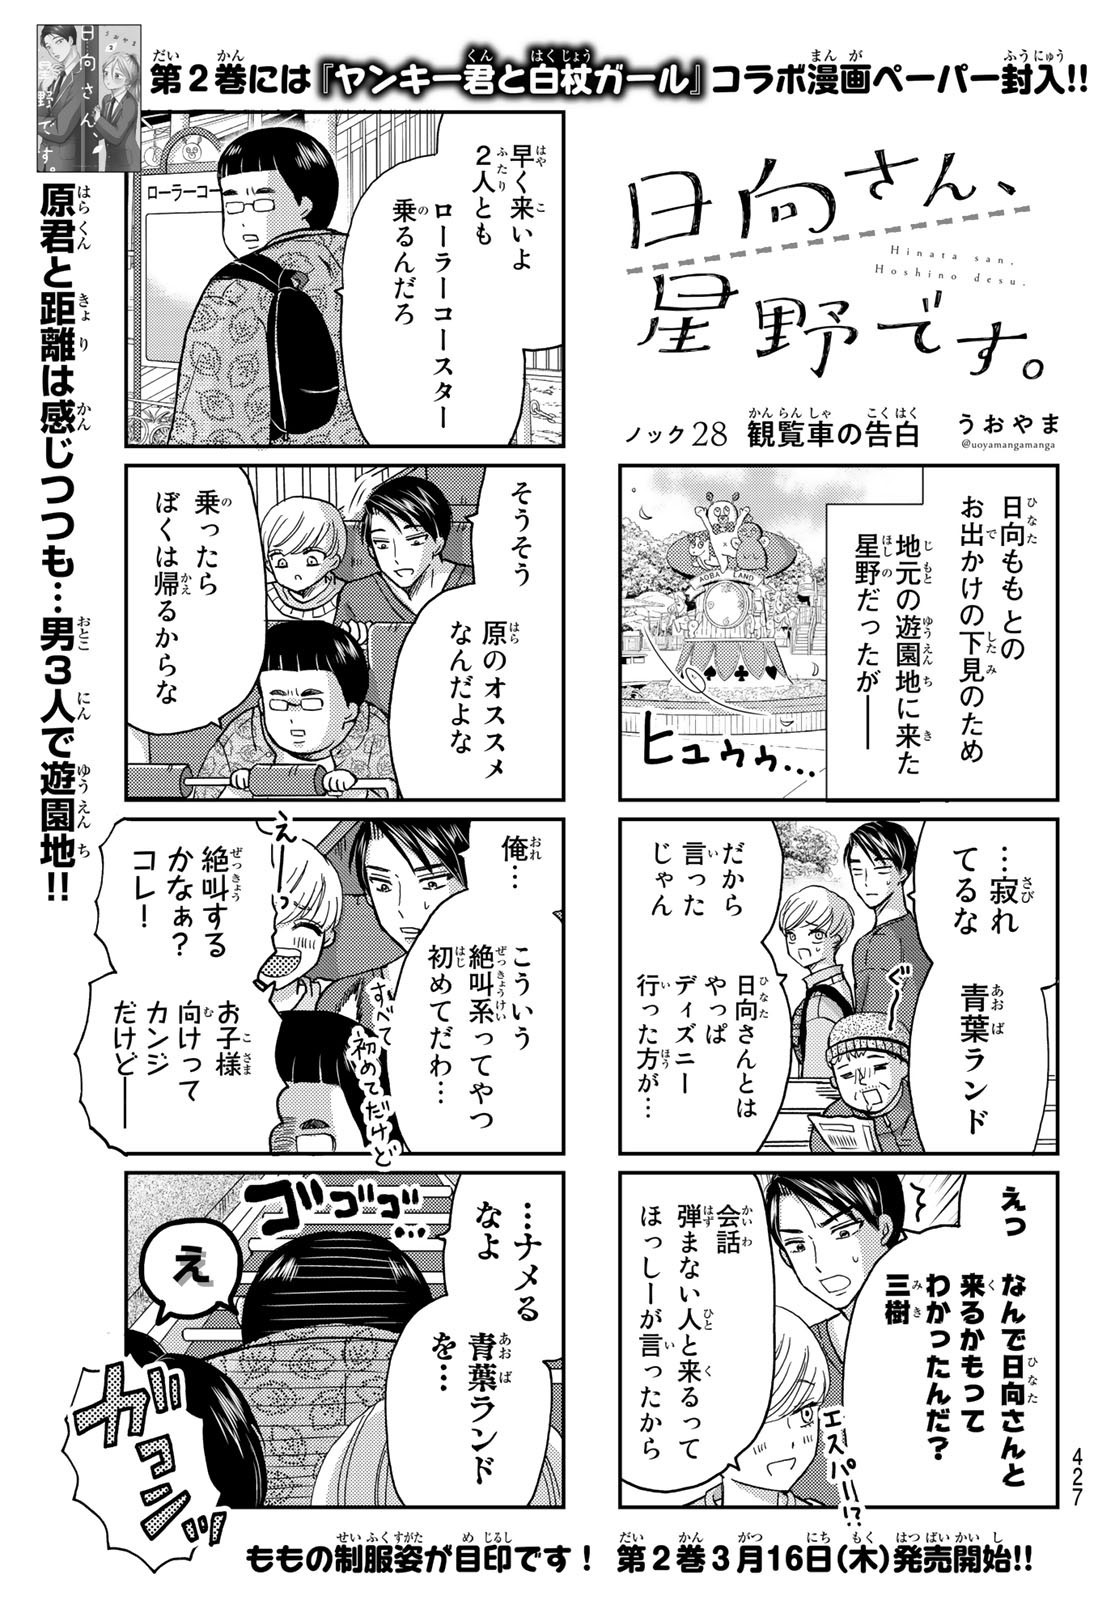 Hinata-san, Hoshino desu. - Chapter 028 - Page 1